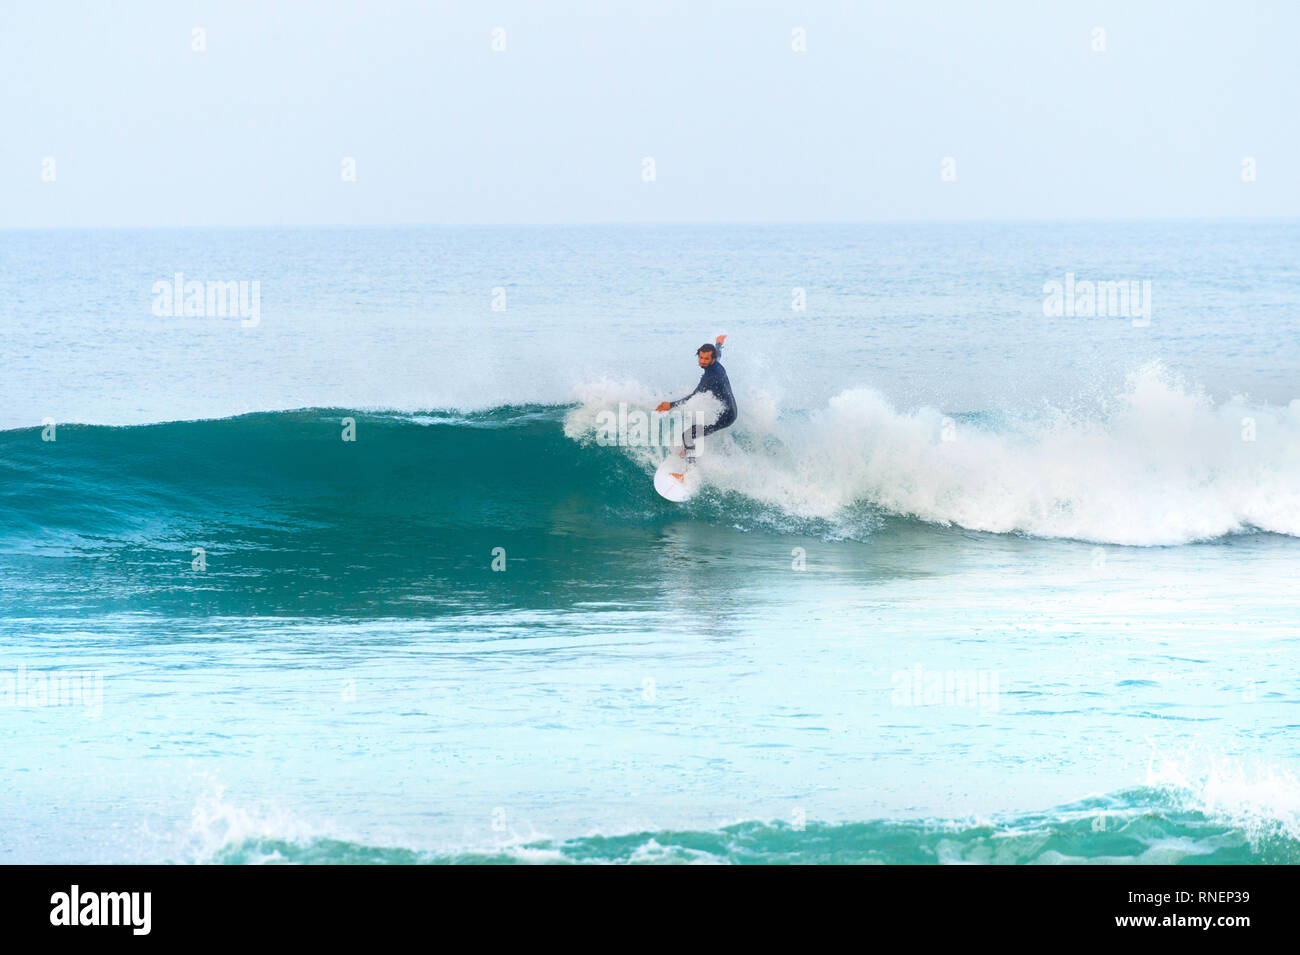 BALEAL, Peniche, Portugal - Dezember 13, 2016: Surfer auf einer Welle. Peniche ist der berühmte surfen Resort in Portugal Stockfoto